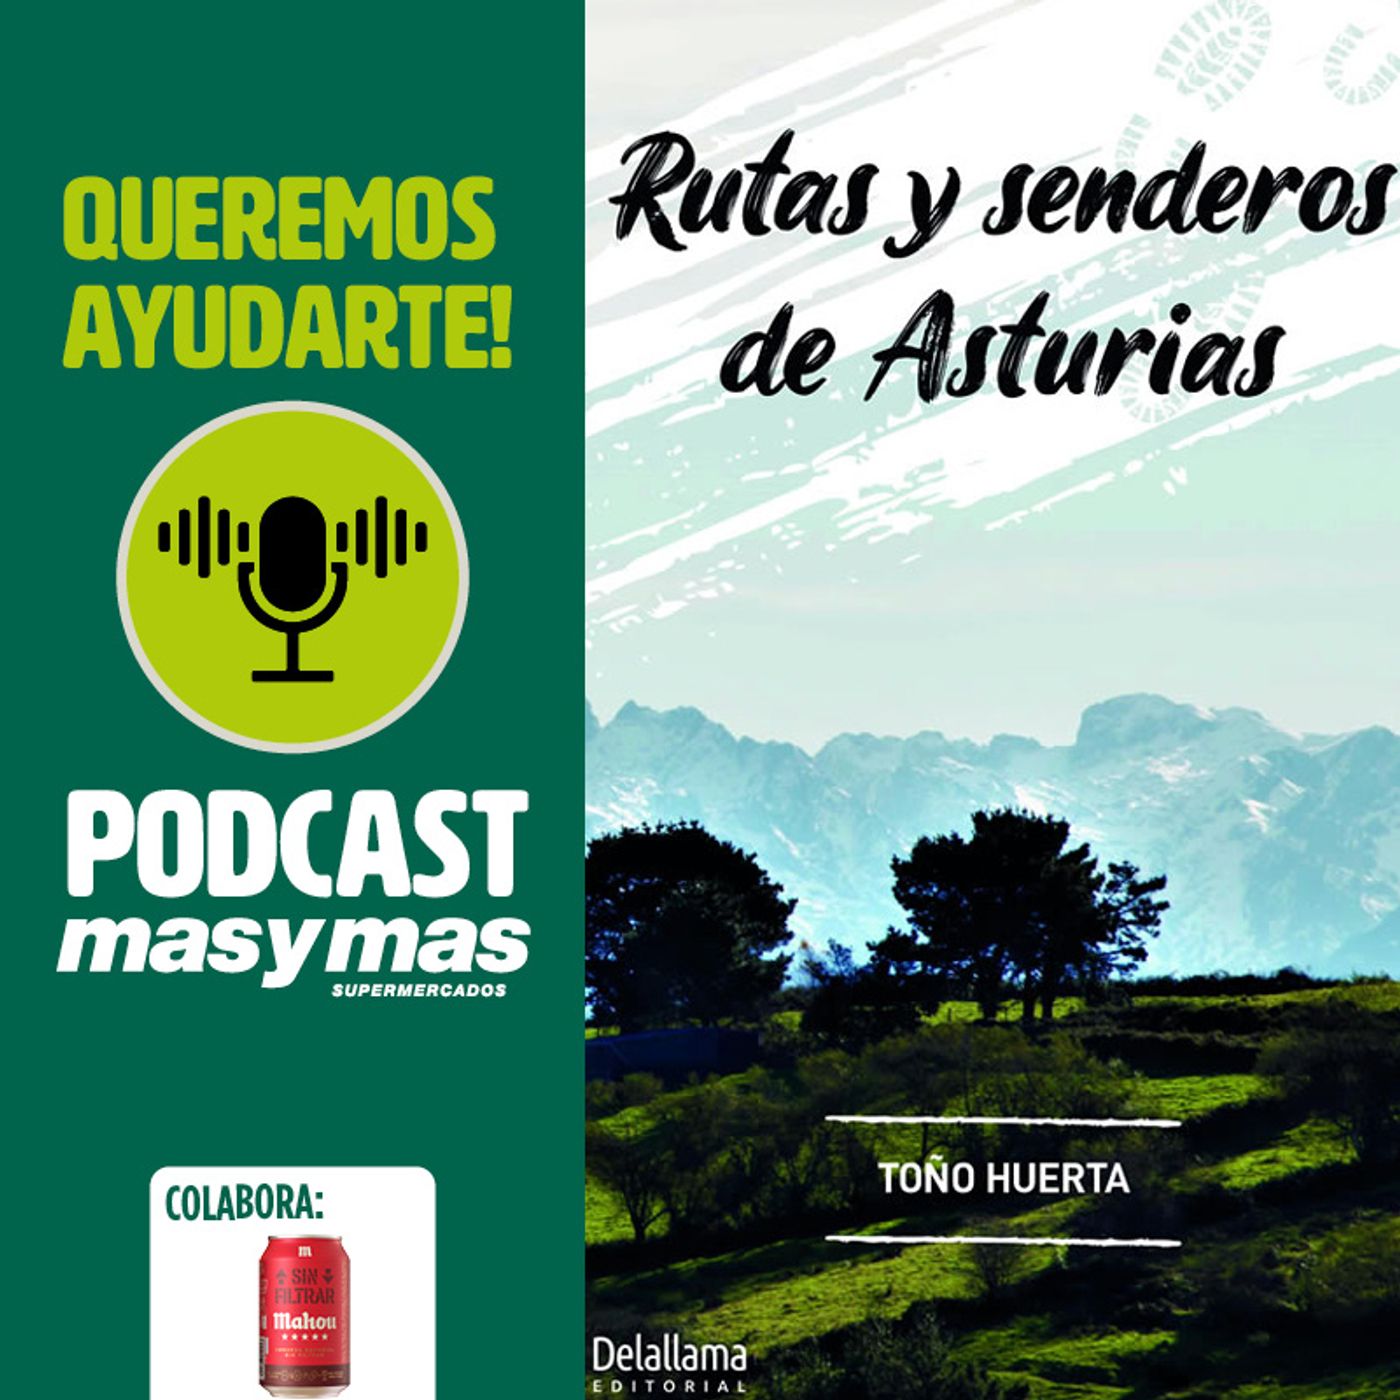 Rutas y senderos de Asturias con Toño Huerta